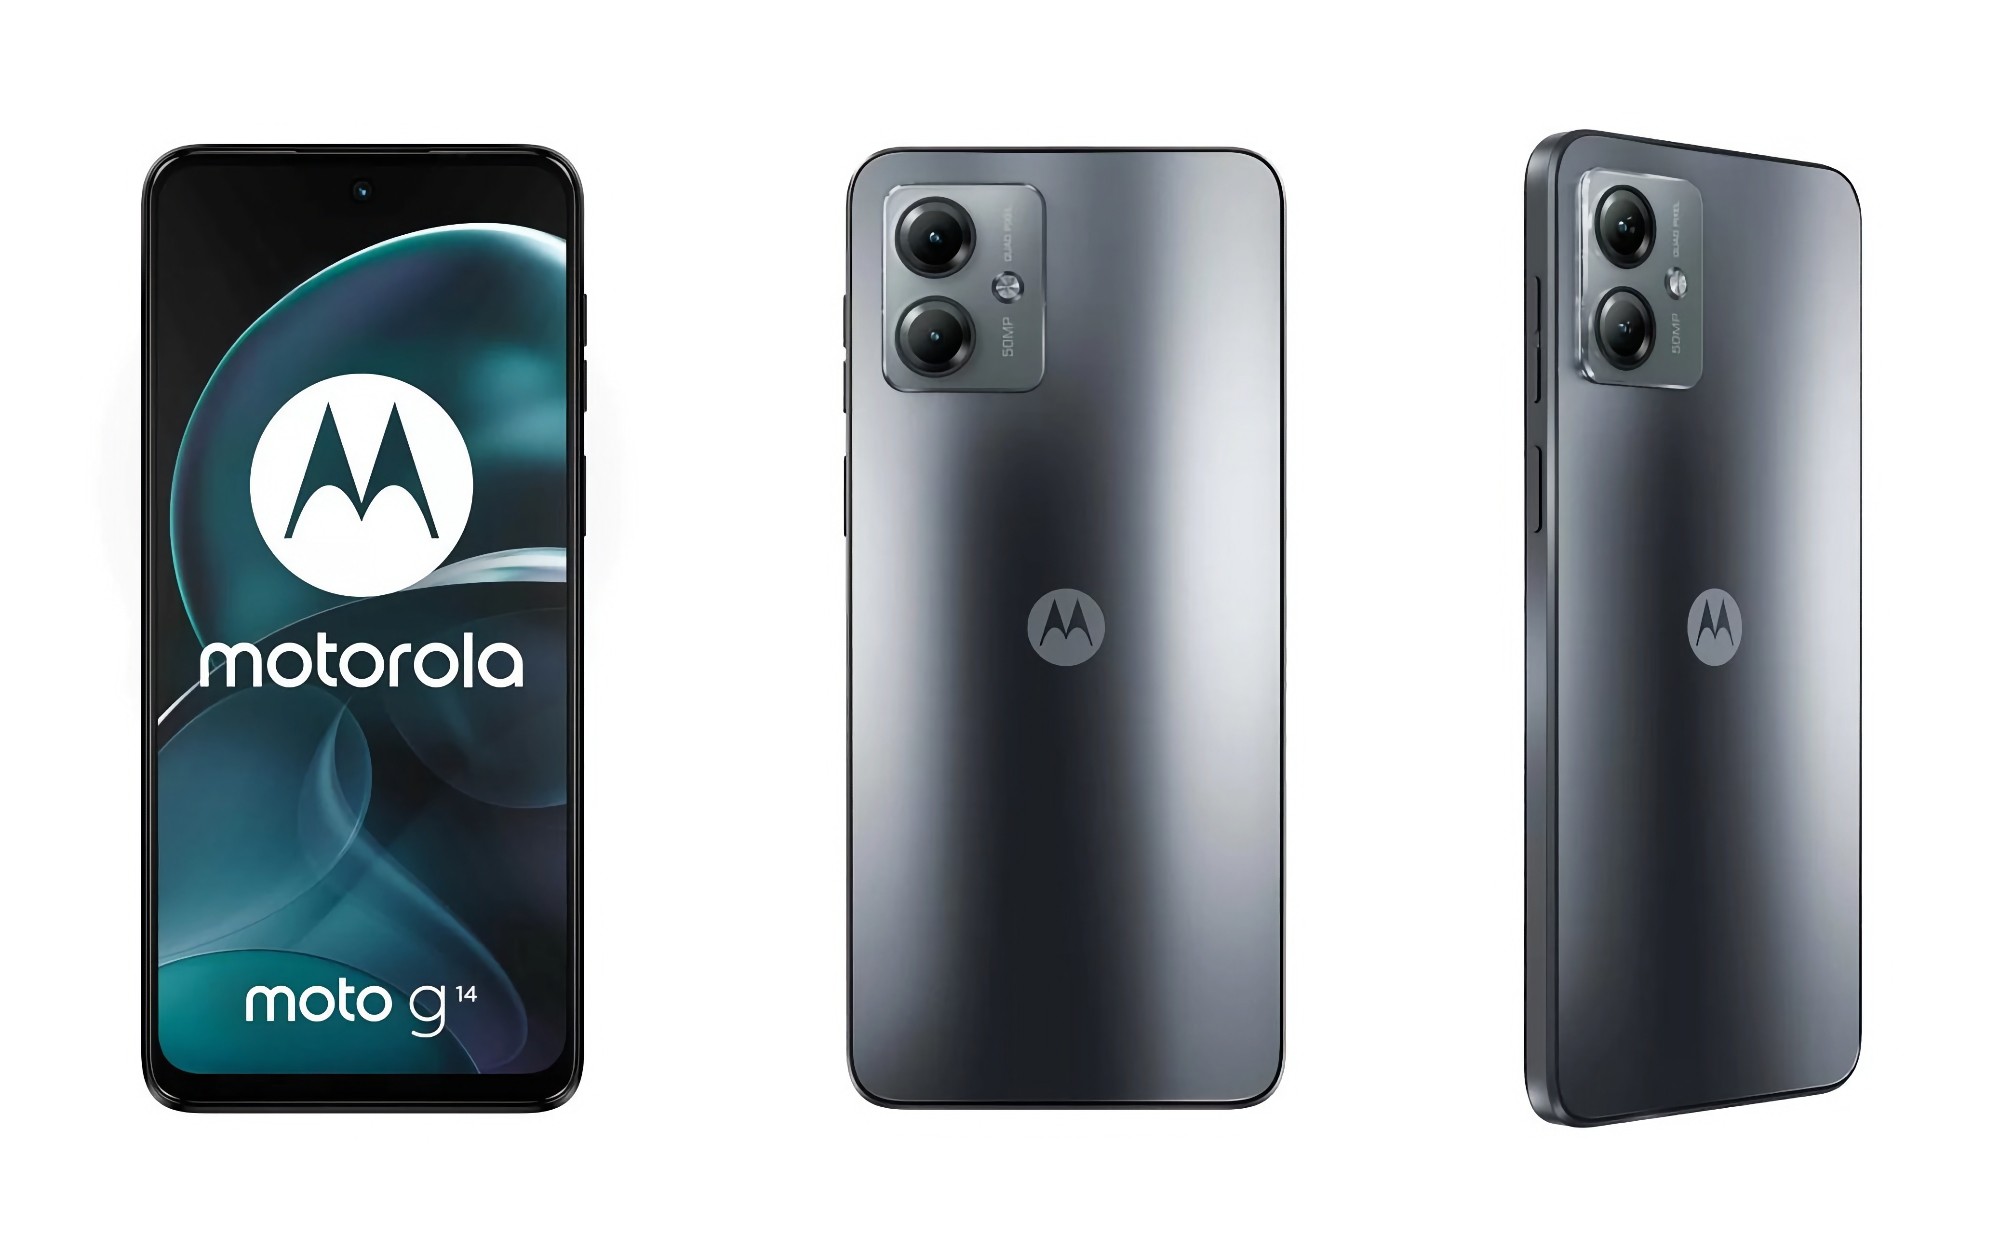 En insider har offentliggjort billeder, specifikationer og pris på Moto G14 smartphone i Europa